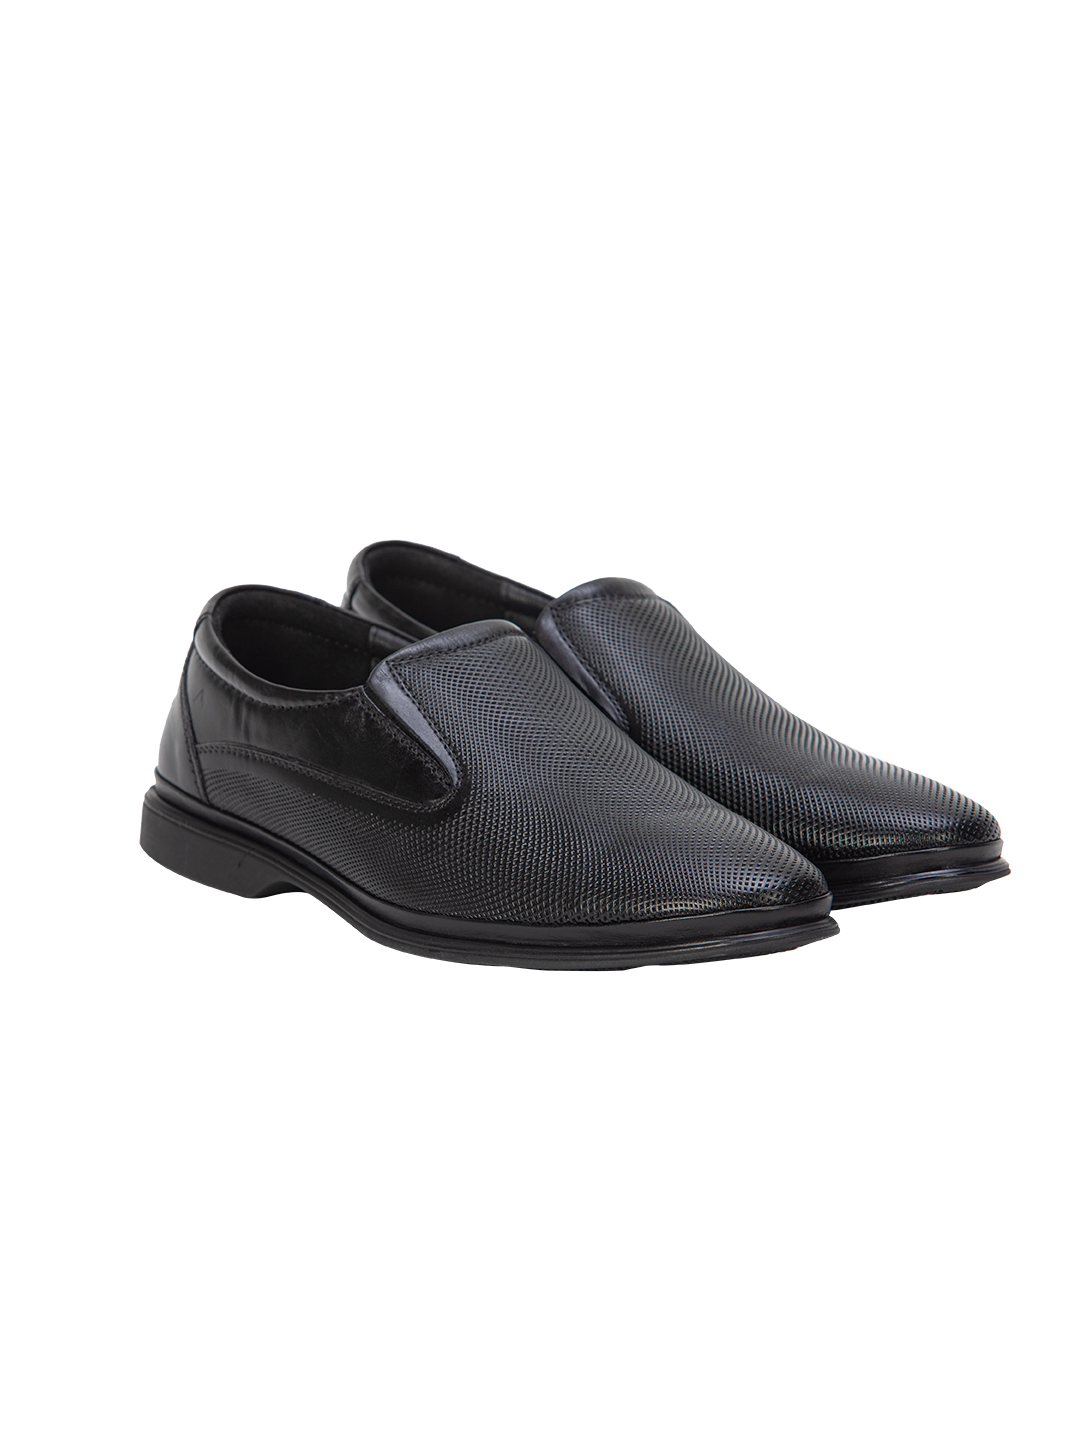 Buy Von Wellx Germany Comfort Mondaine Casual Black Shoes Online in Srinagar